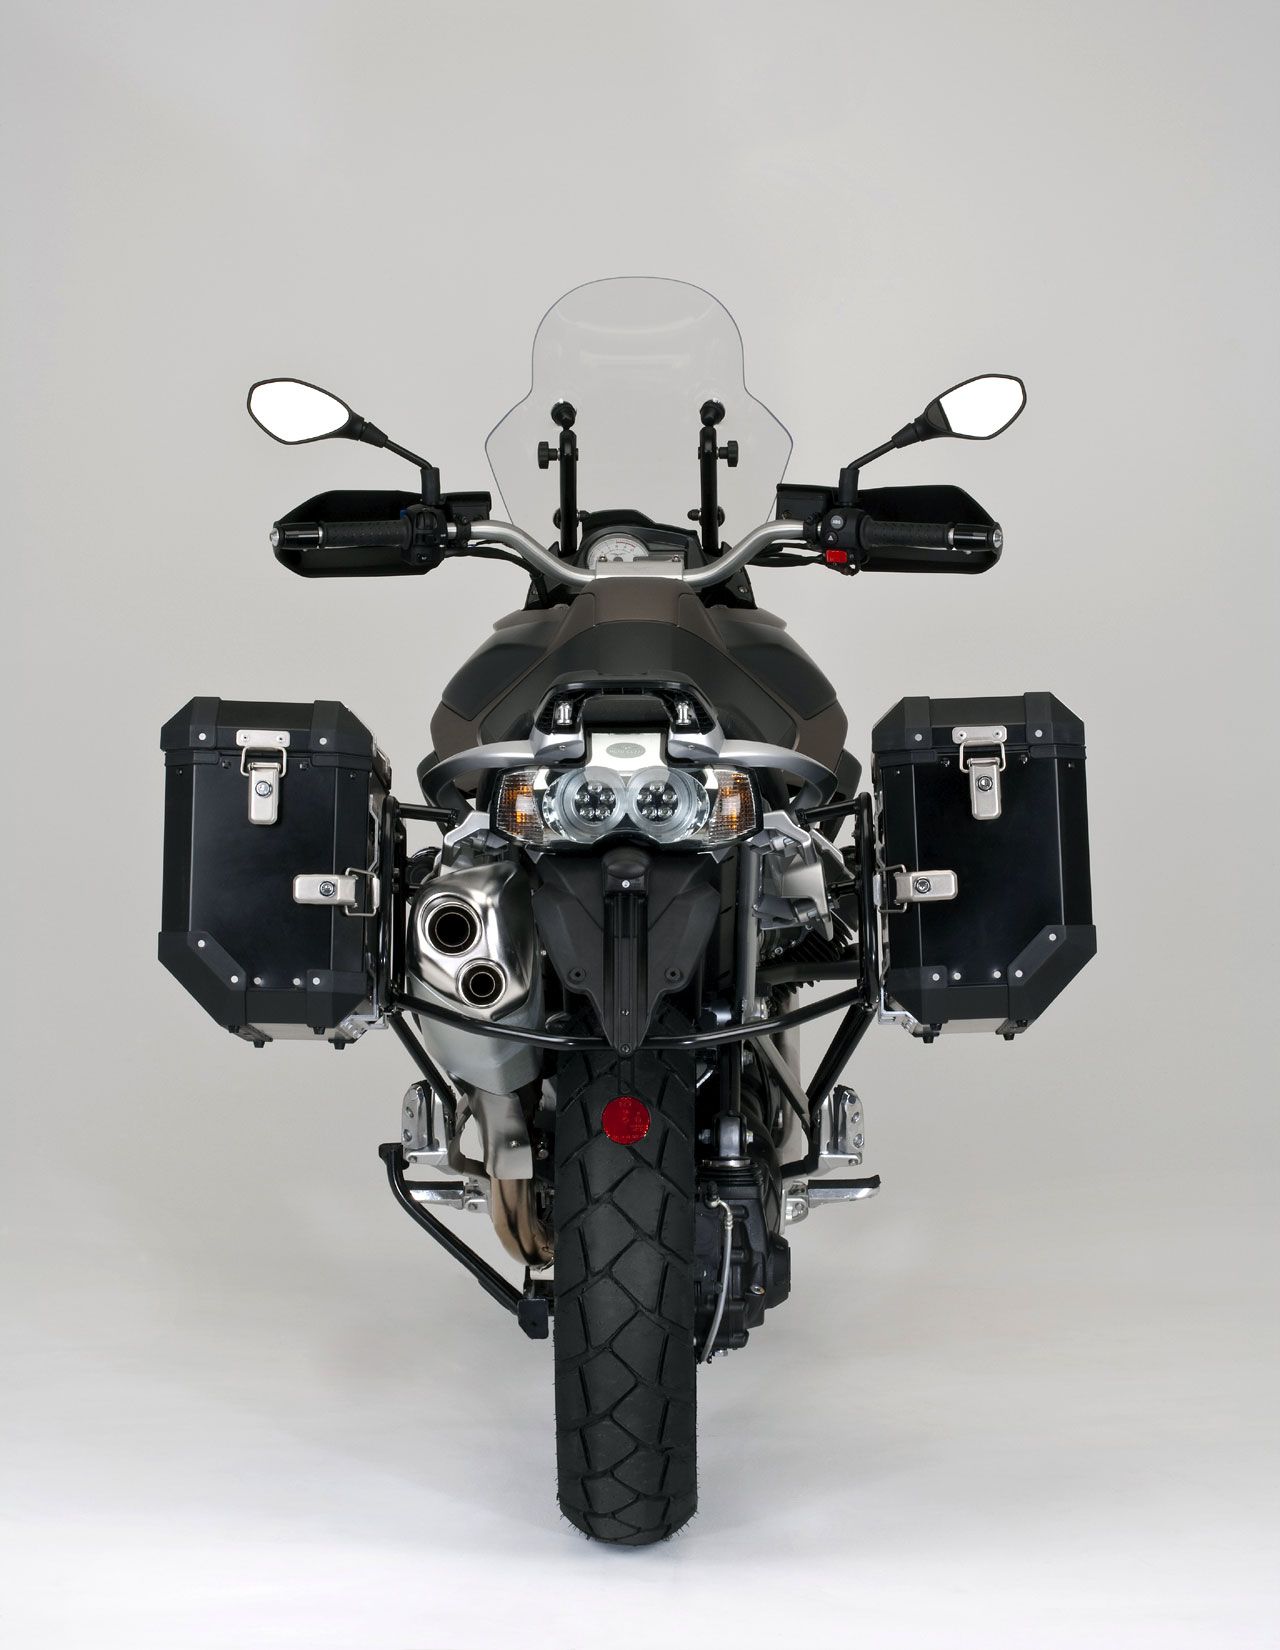 2012 Moto Guzzi Stelvio 1200 4V